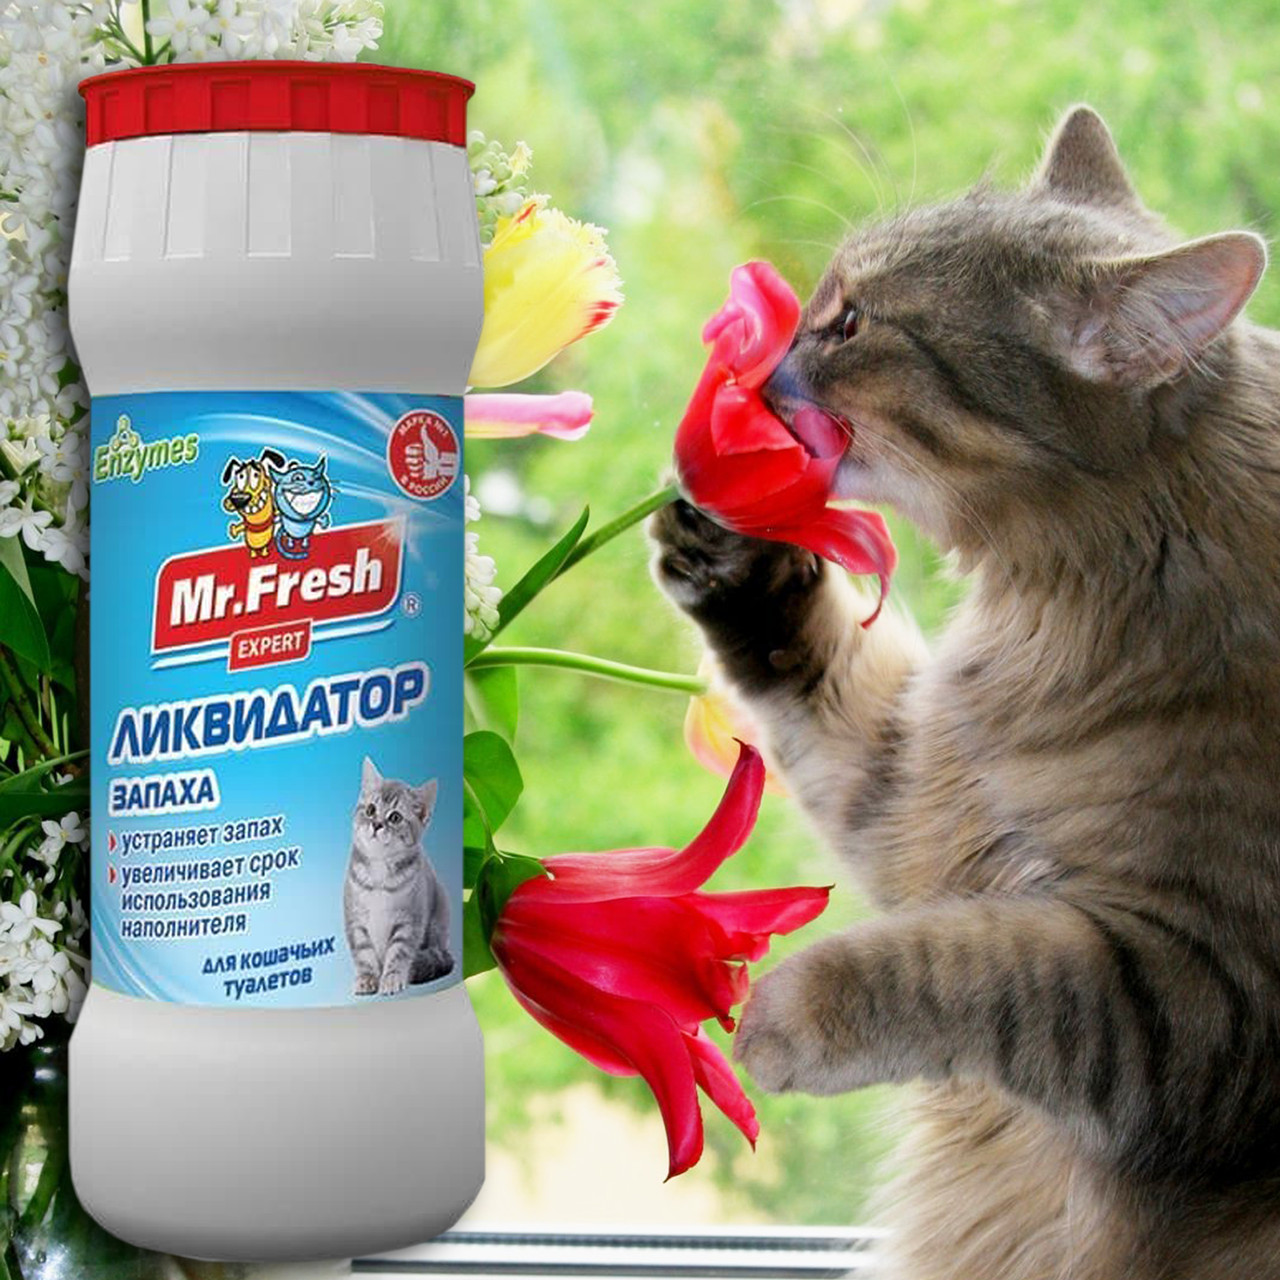 Порошок Ликвидатор запаха для кошачьих туалетов Mr.Fresh Expert